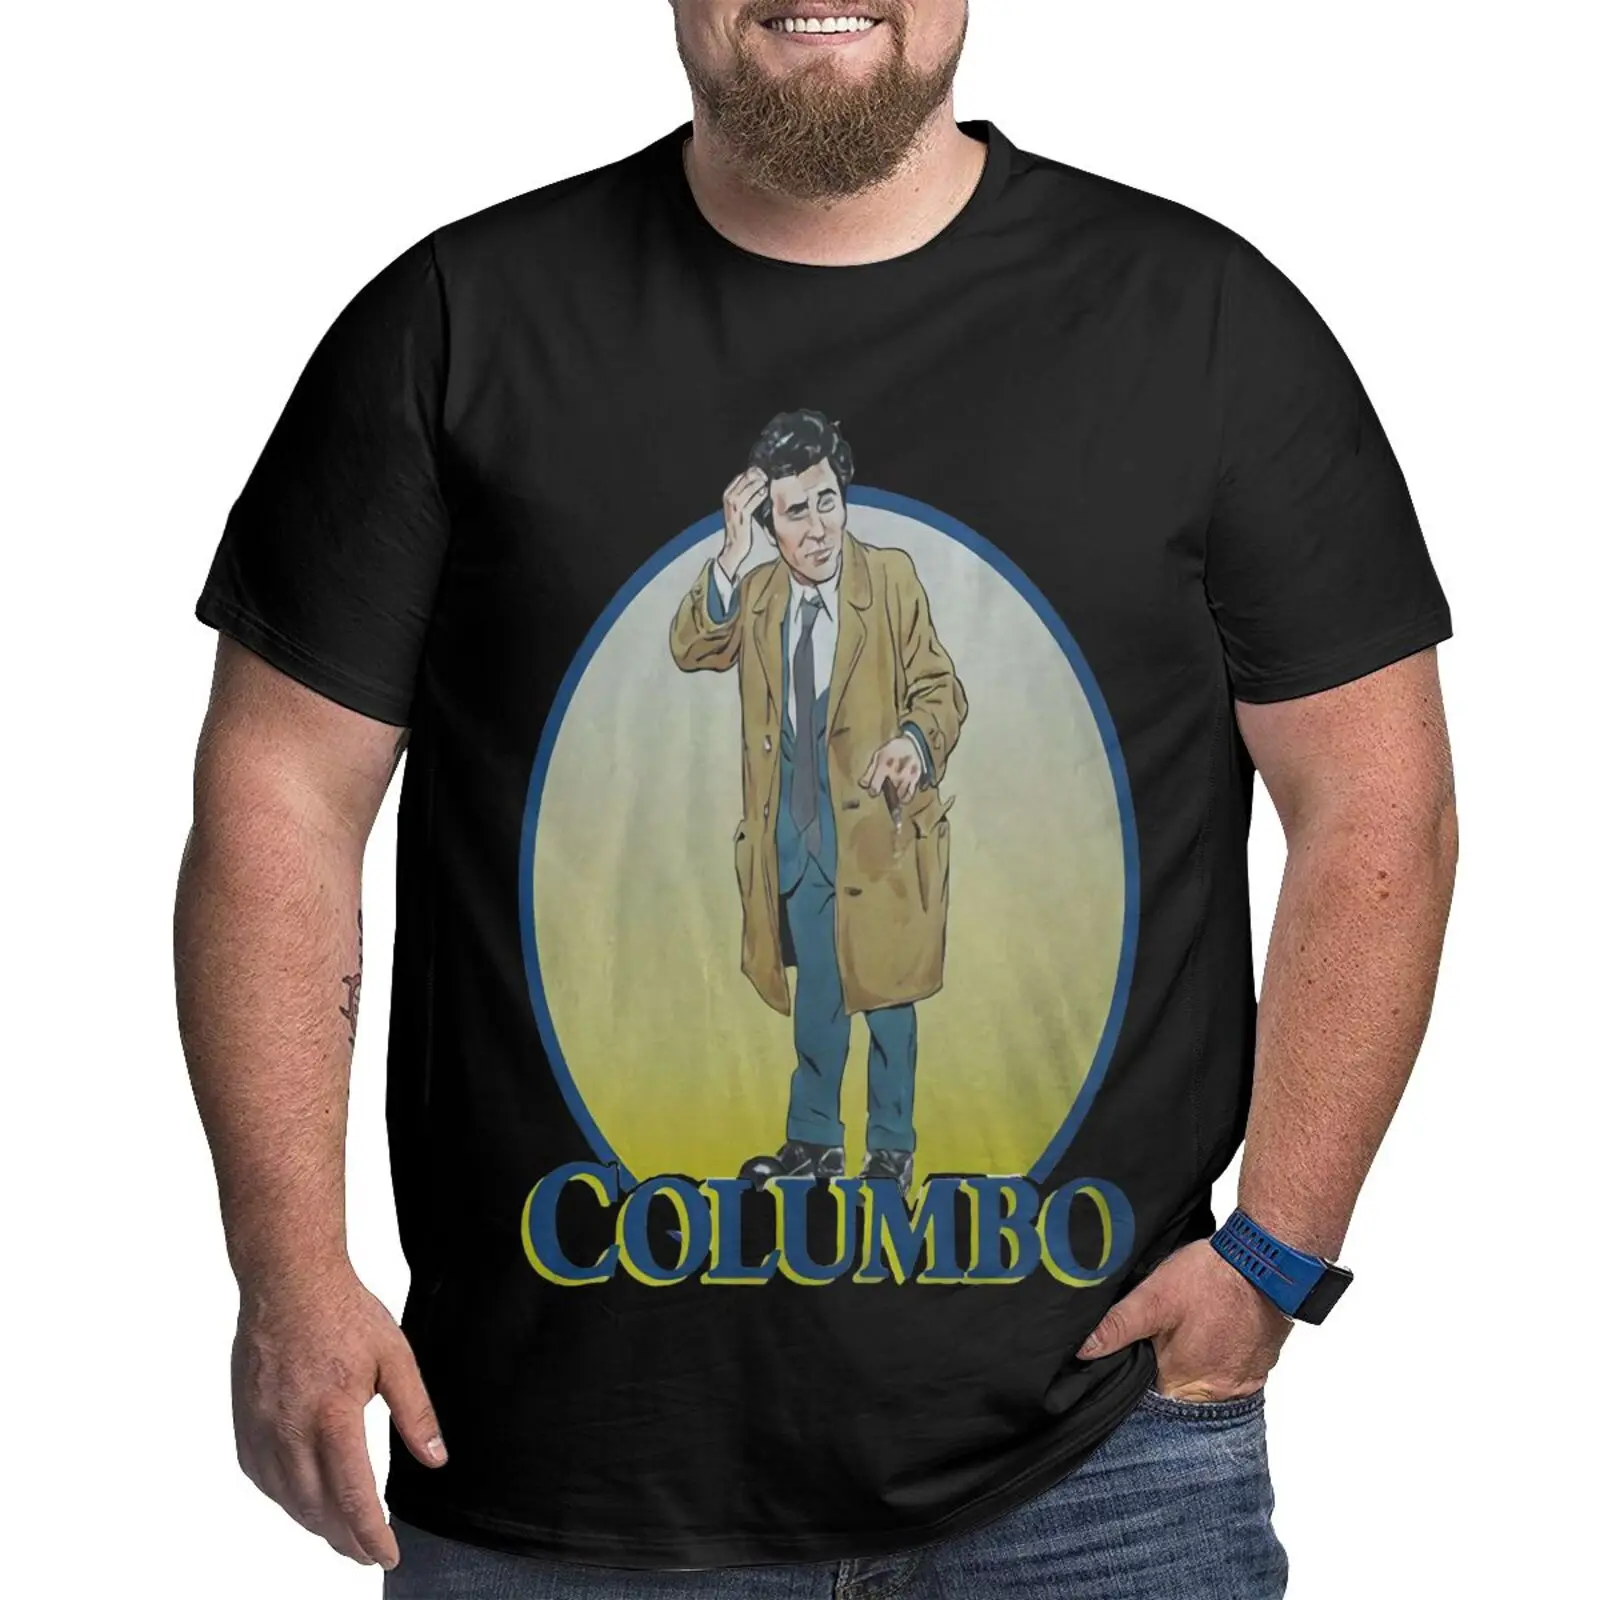 

Футболка мужская Коломбо Питер Фальк Шевроле, оверсайз рубашка, мужская одежда